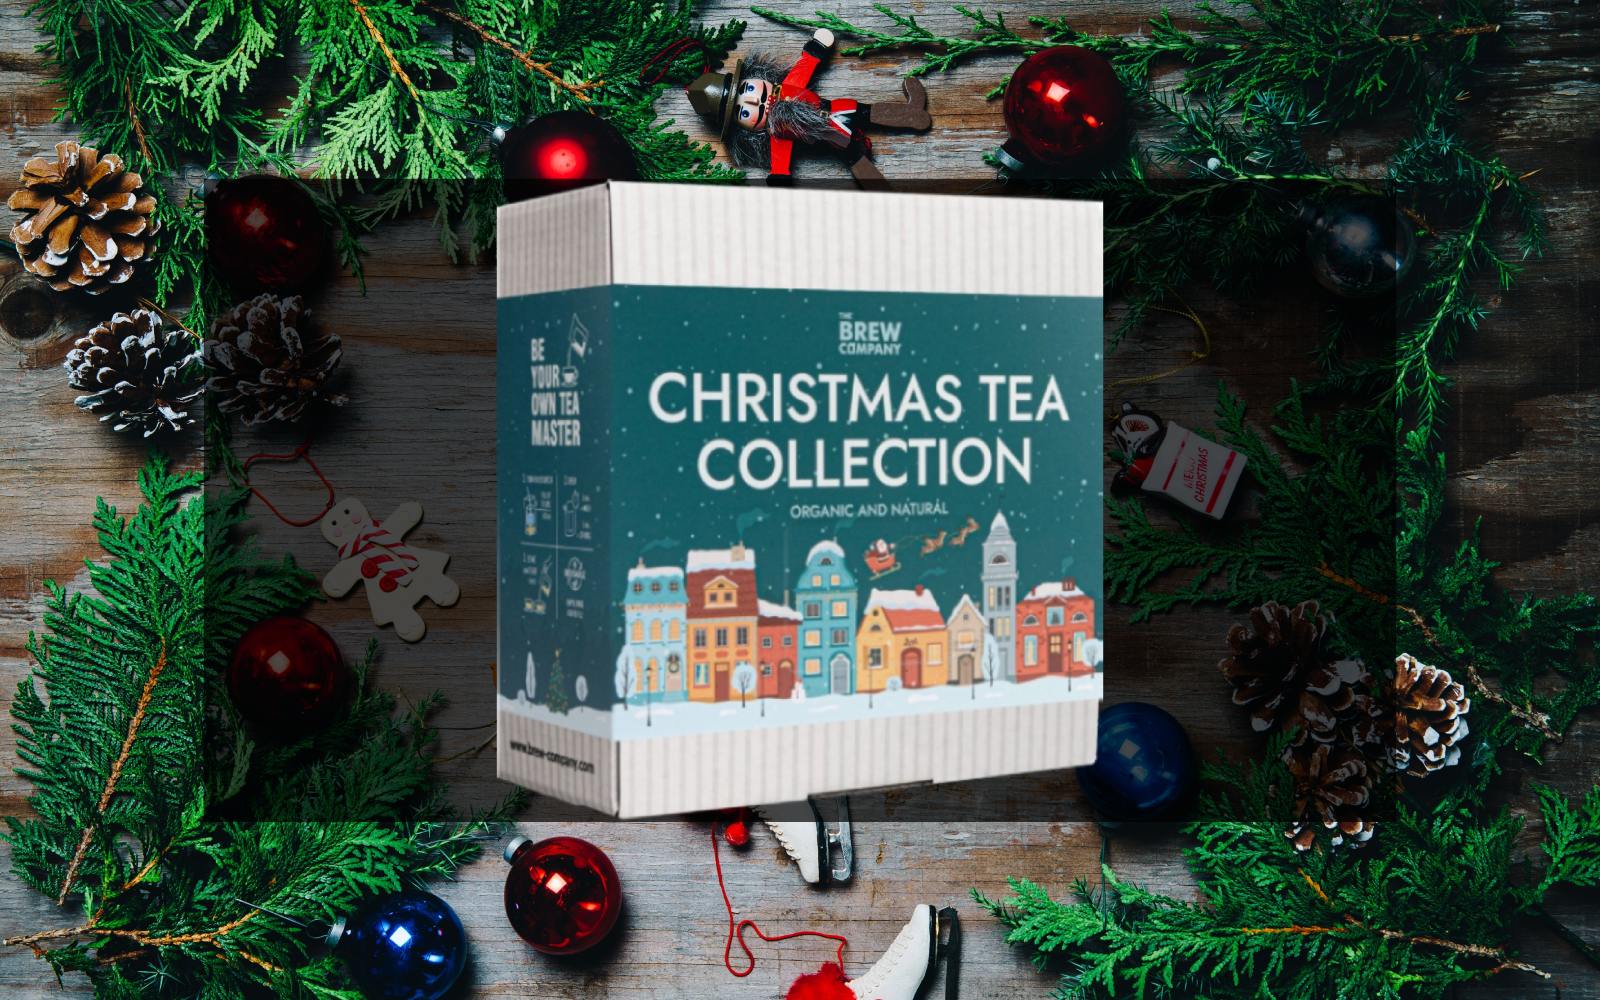 Kalėdinis Teabrewer arbatų dovanų rinkinys jau pas mus!